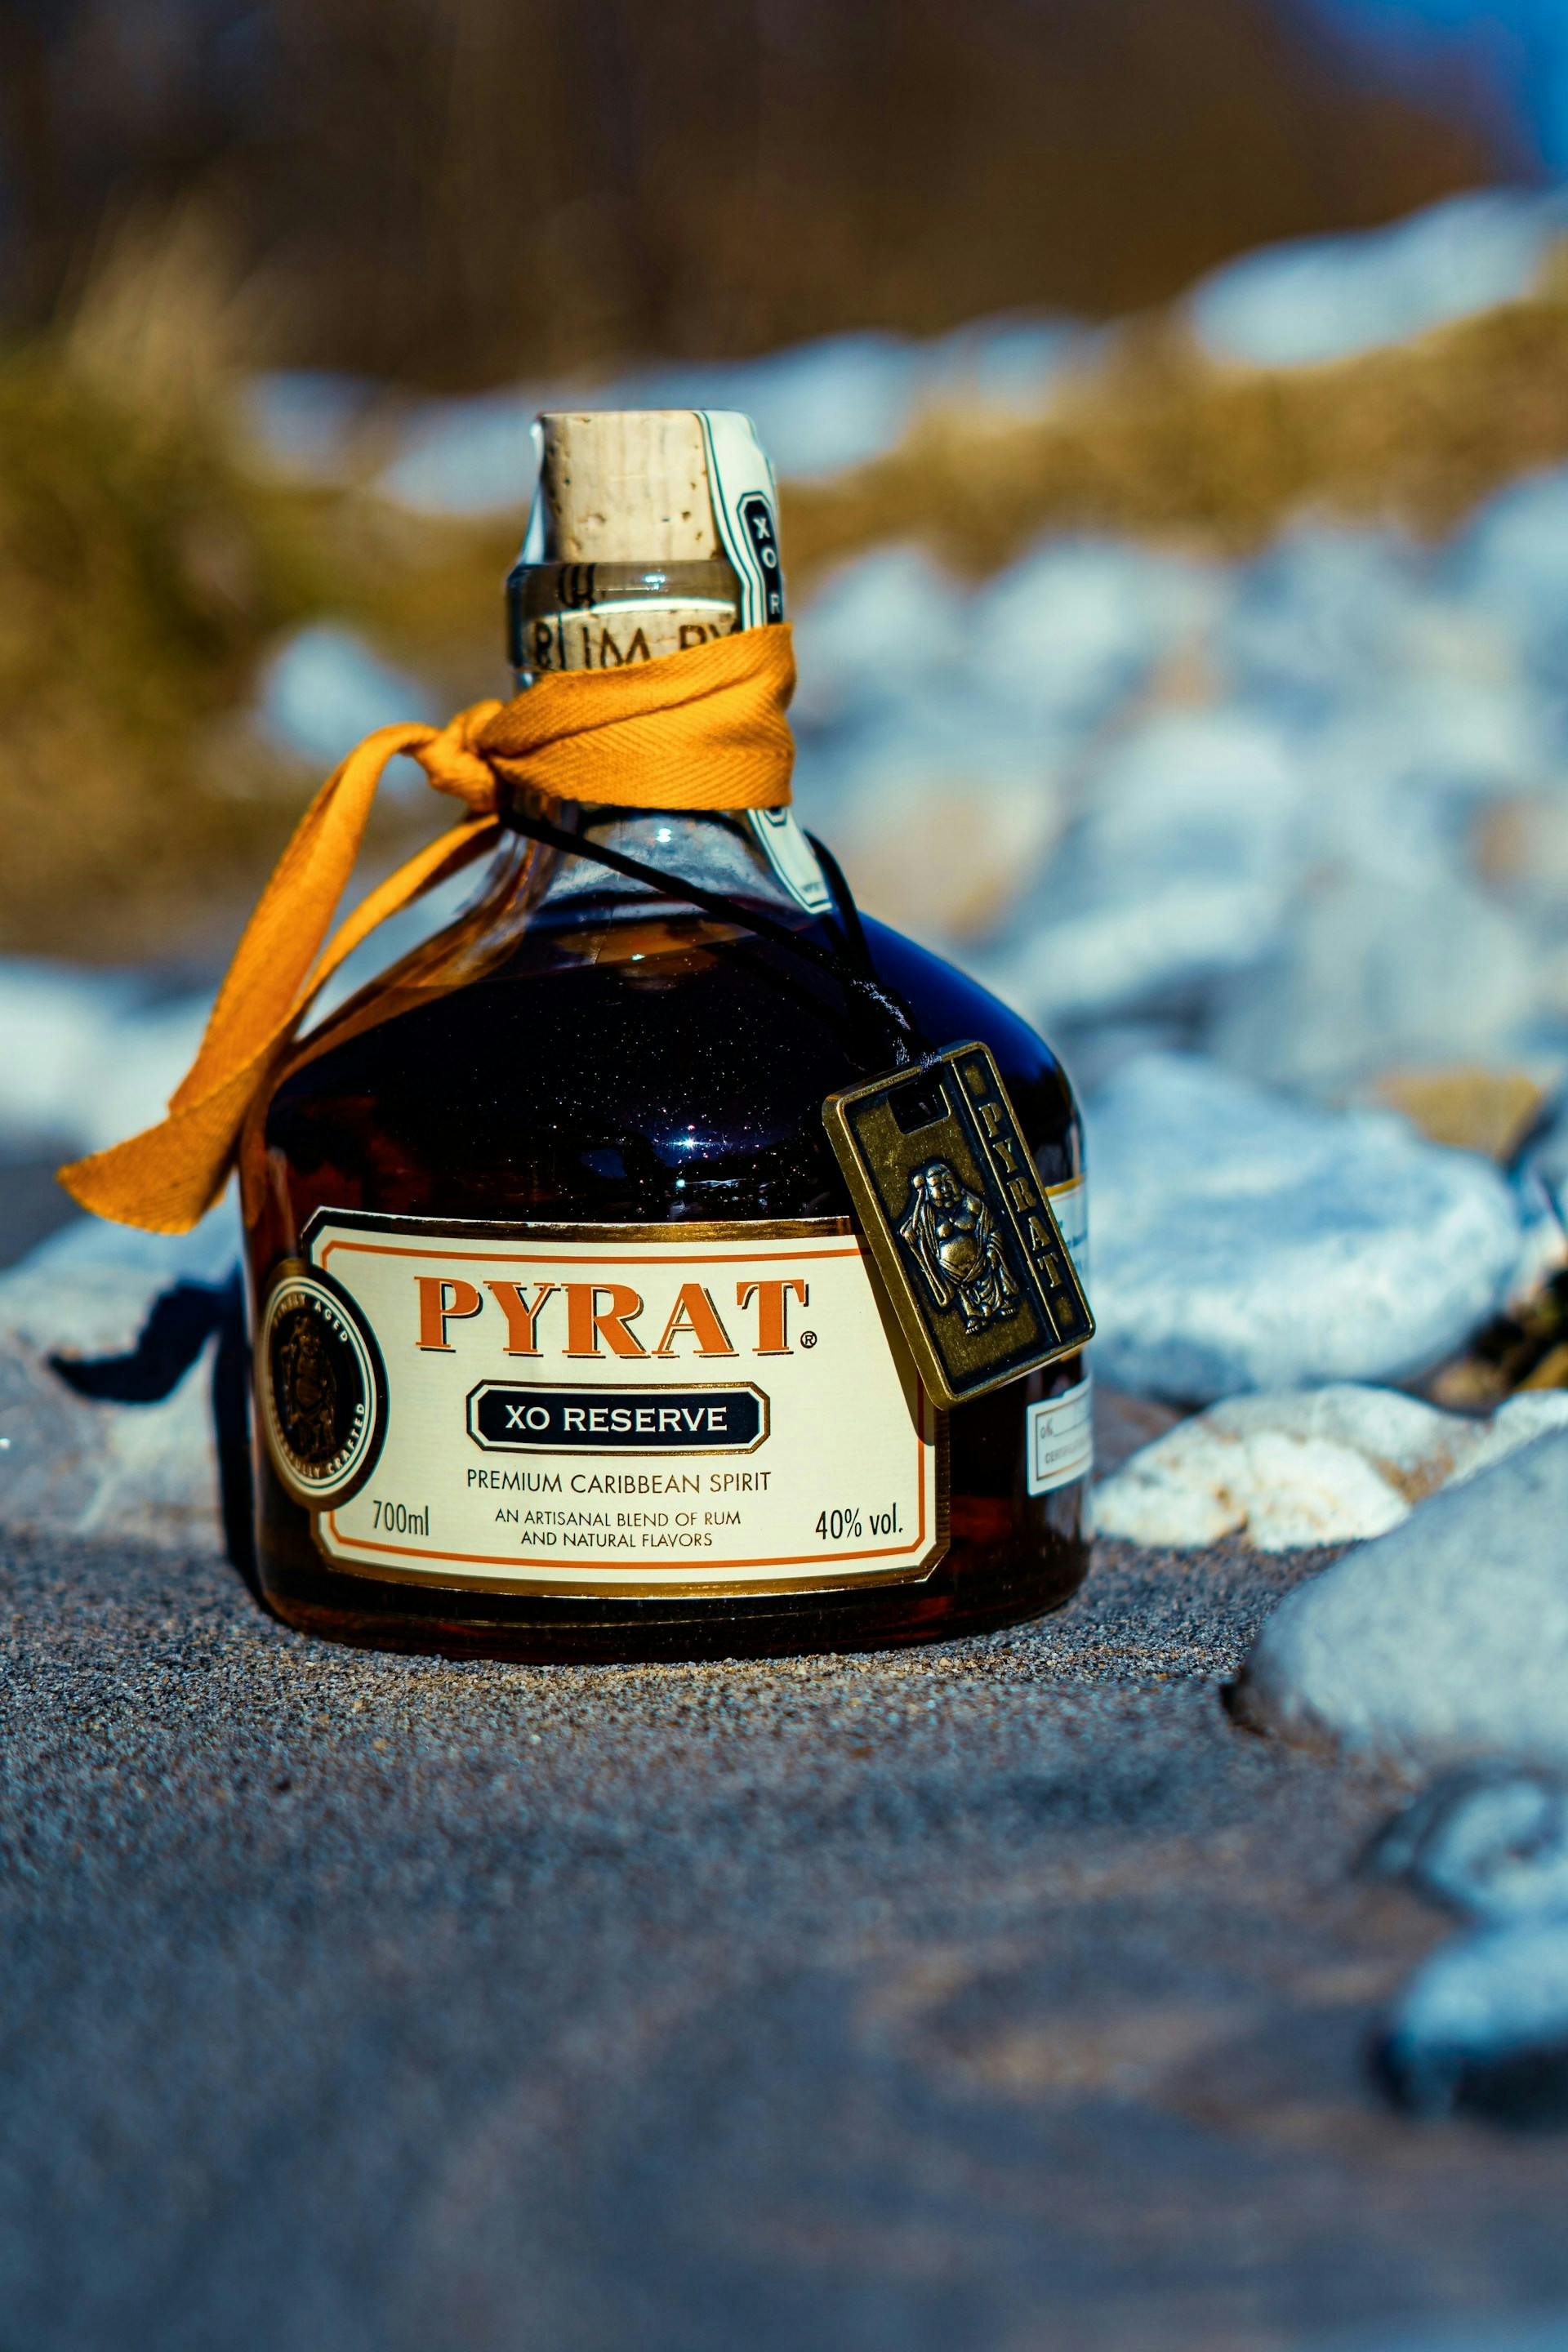 Pyrat Rum